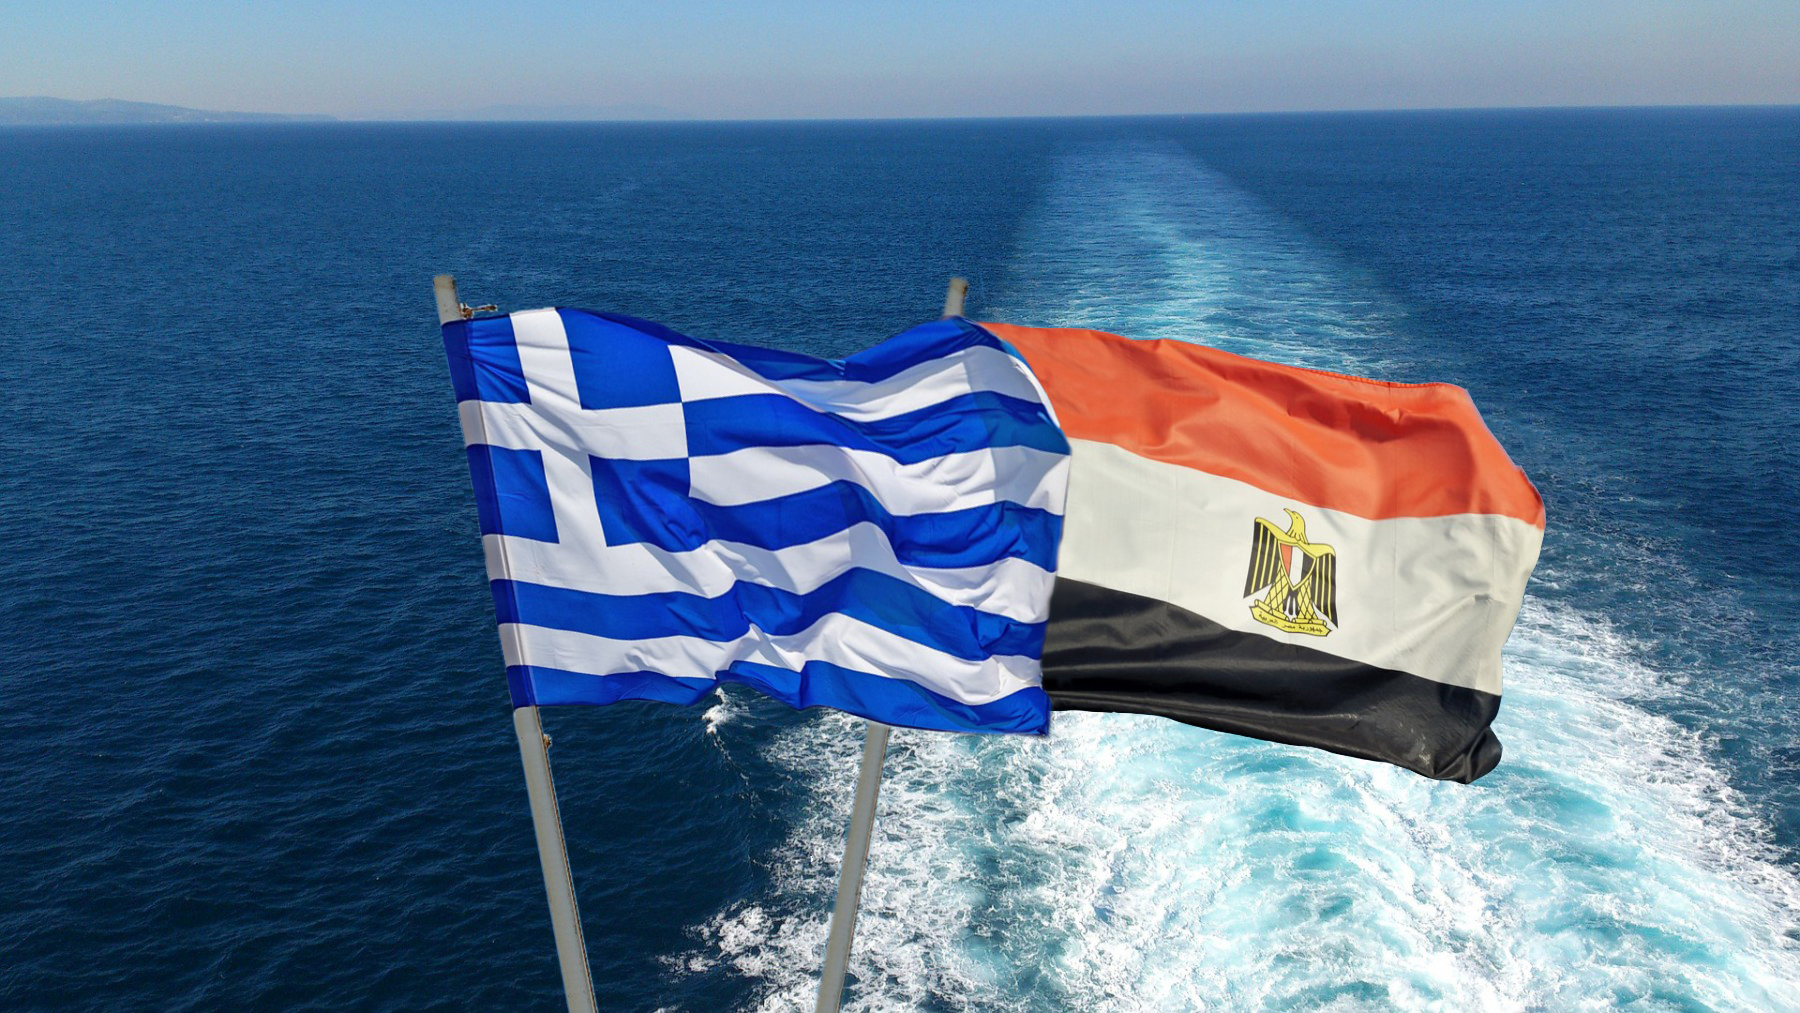 Κ. Μητσοτάκης: Η Ελλάδα και η Αίγυπτος είναι εταίροι με αμοιβαίες εξαγωγικές σχέσεις και κοινούς στρατηγικούς στόχους